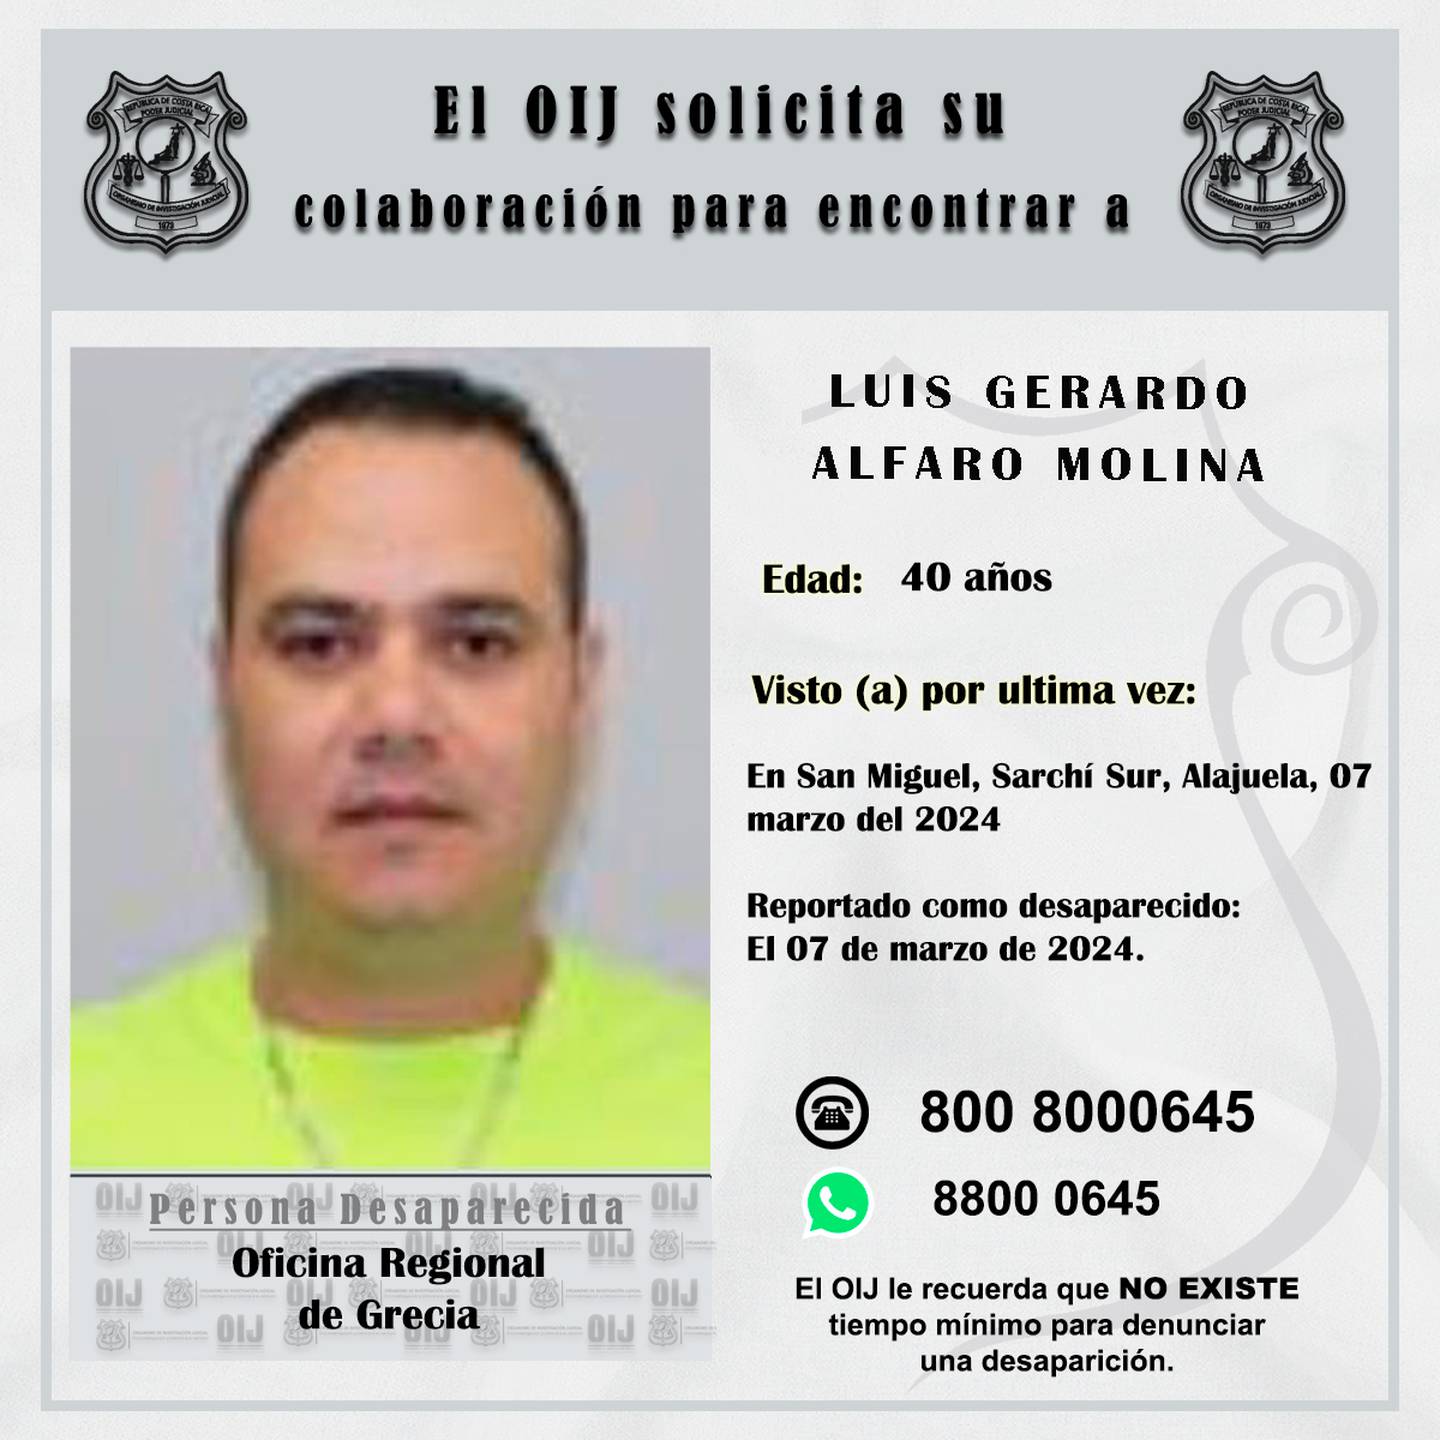 Luis Gerardo alfaro, notificador judicial desaparecido